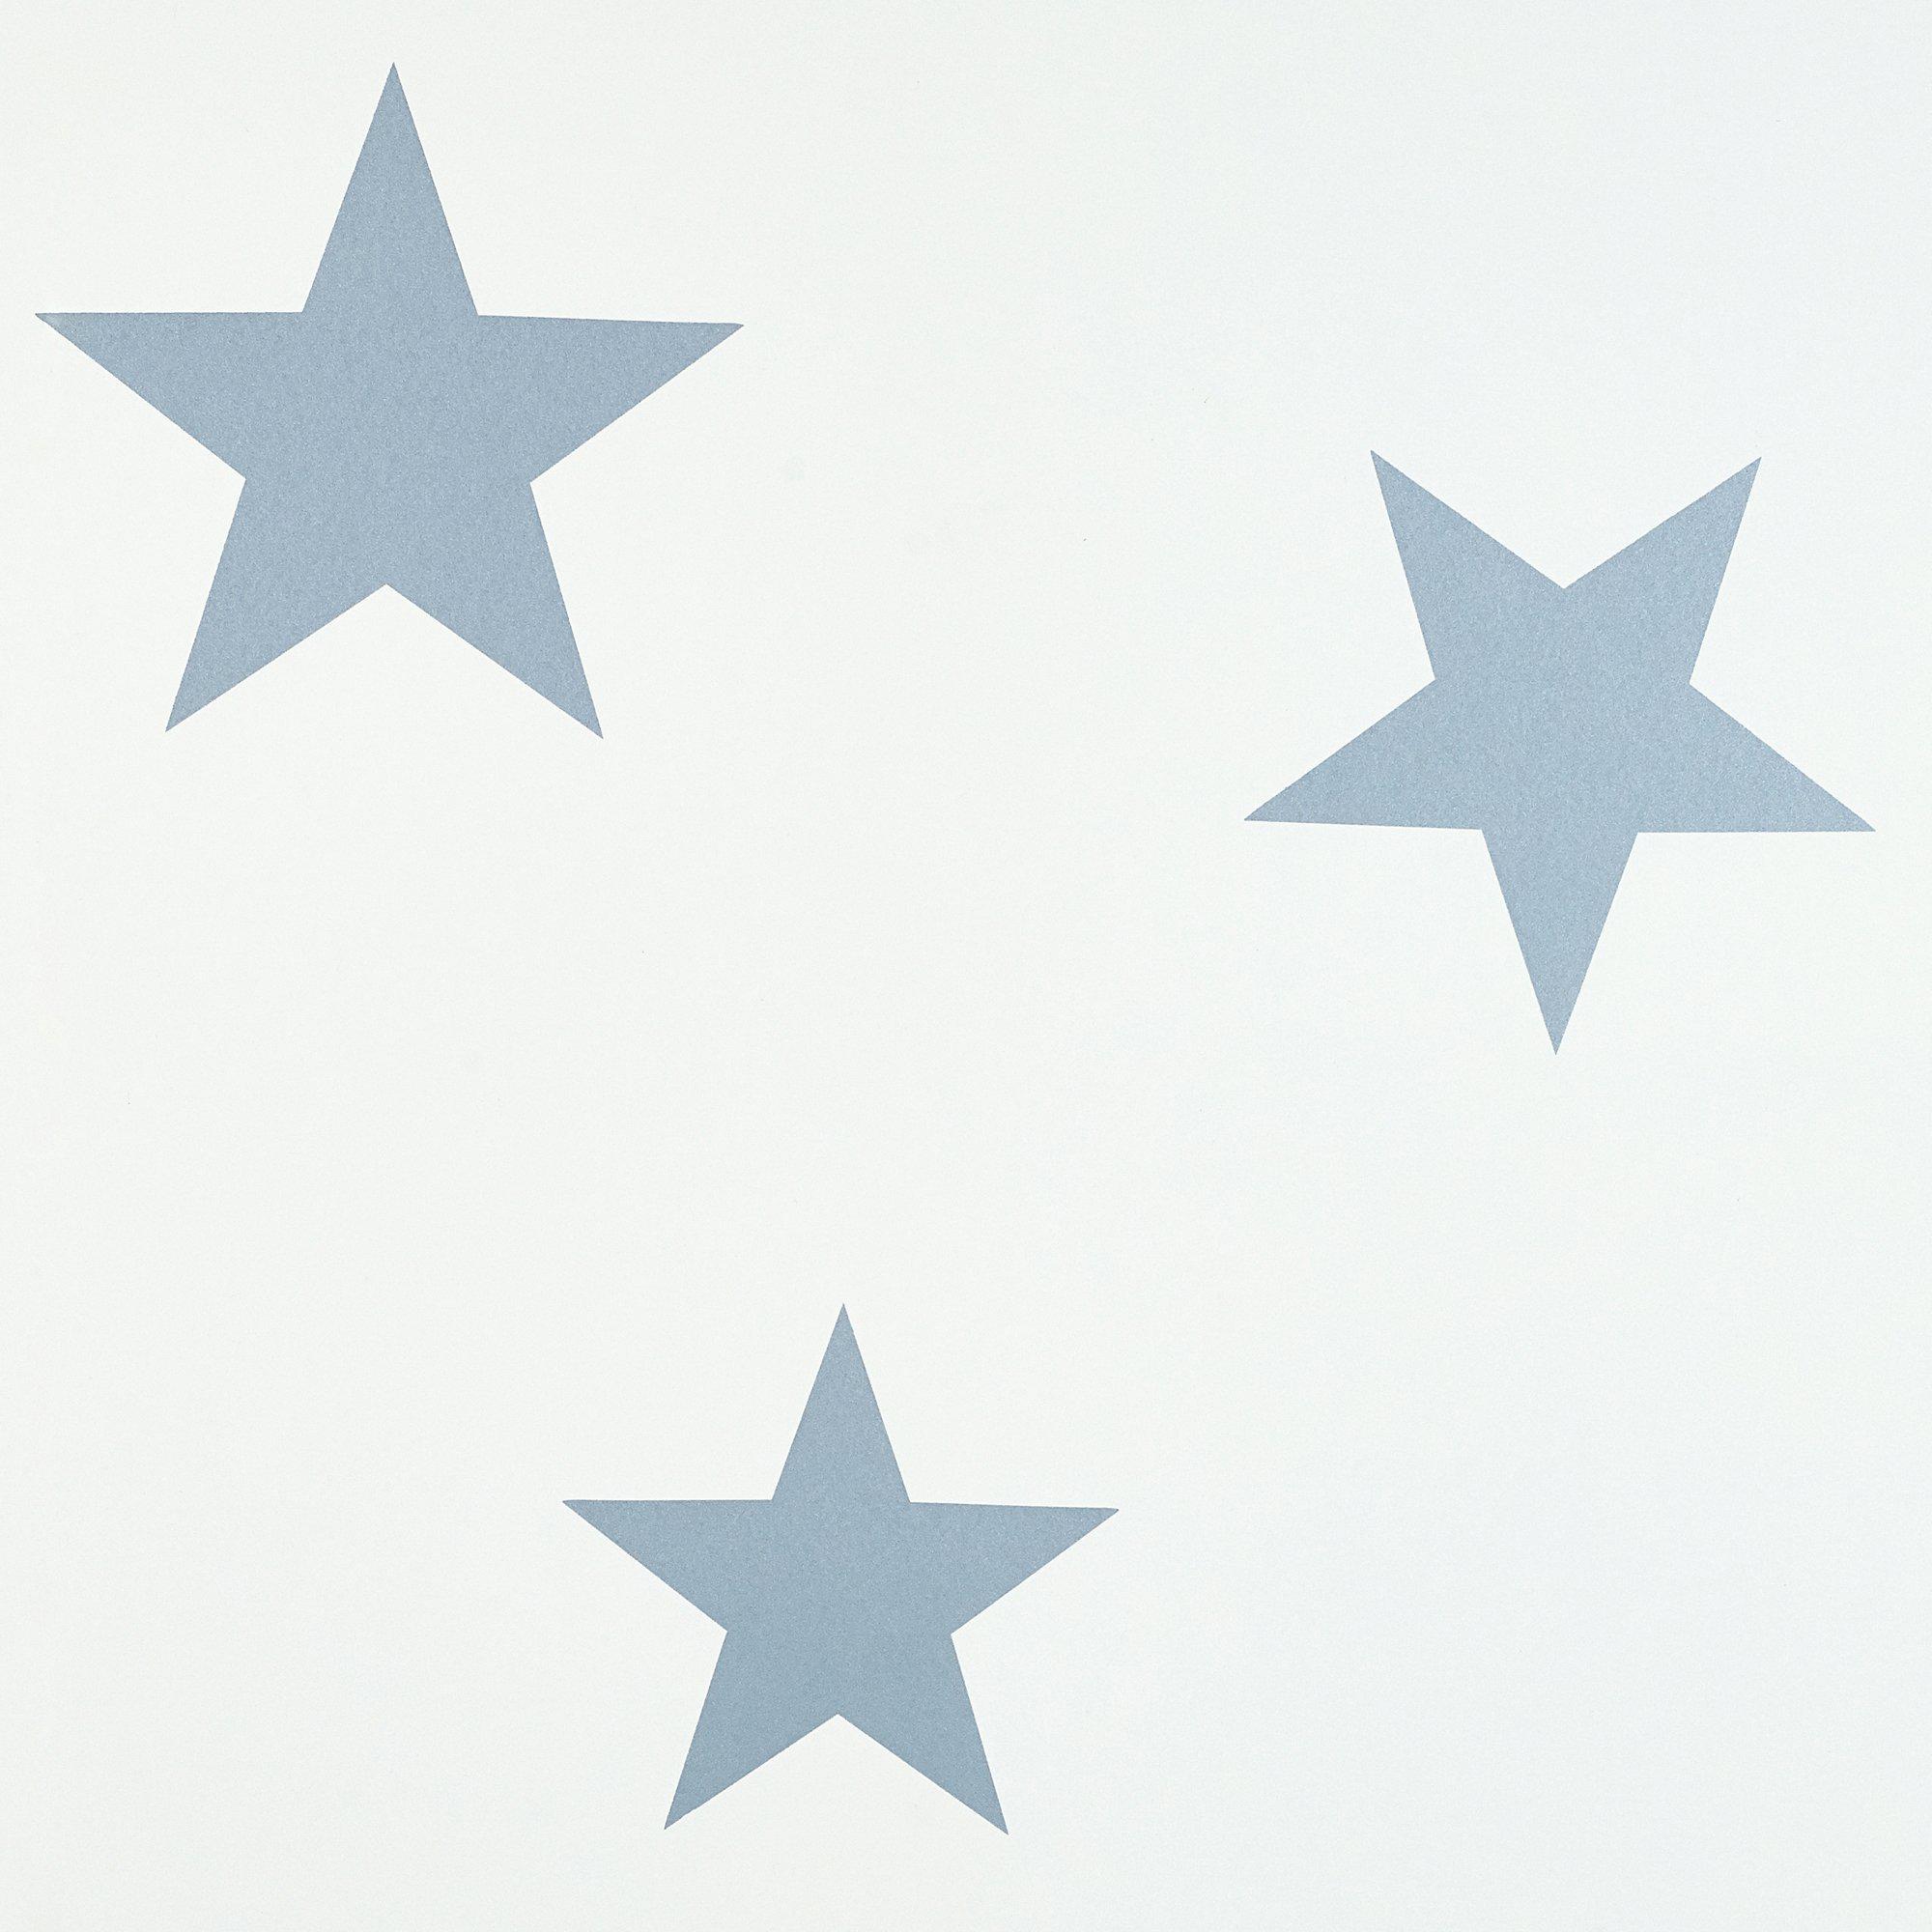 Star Wallpapers Free HD Download 500 HQ  Unsplash